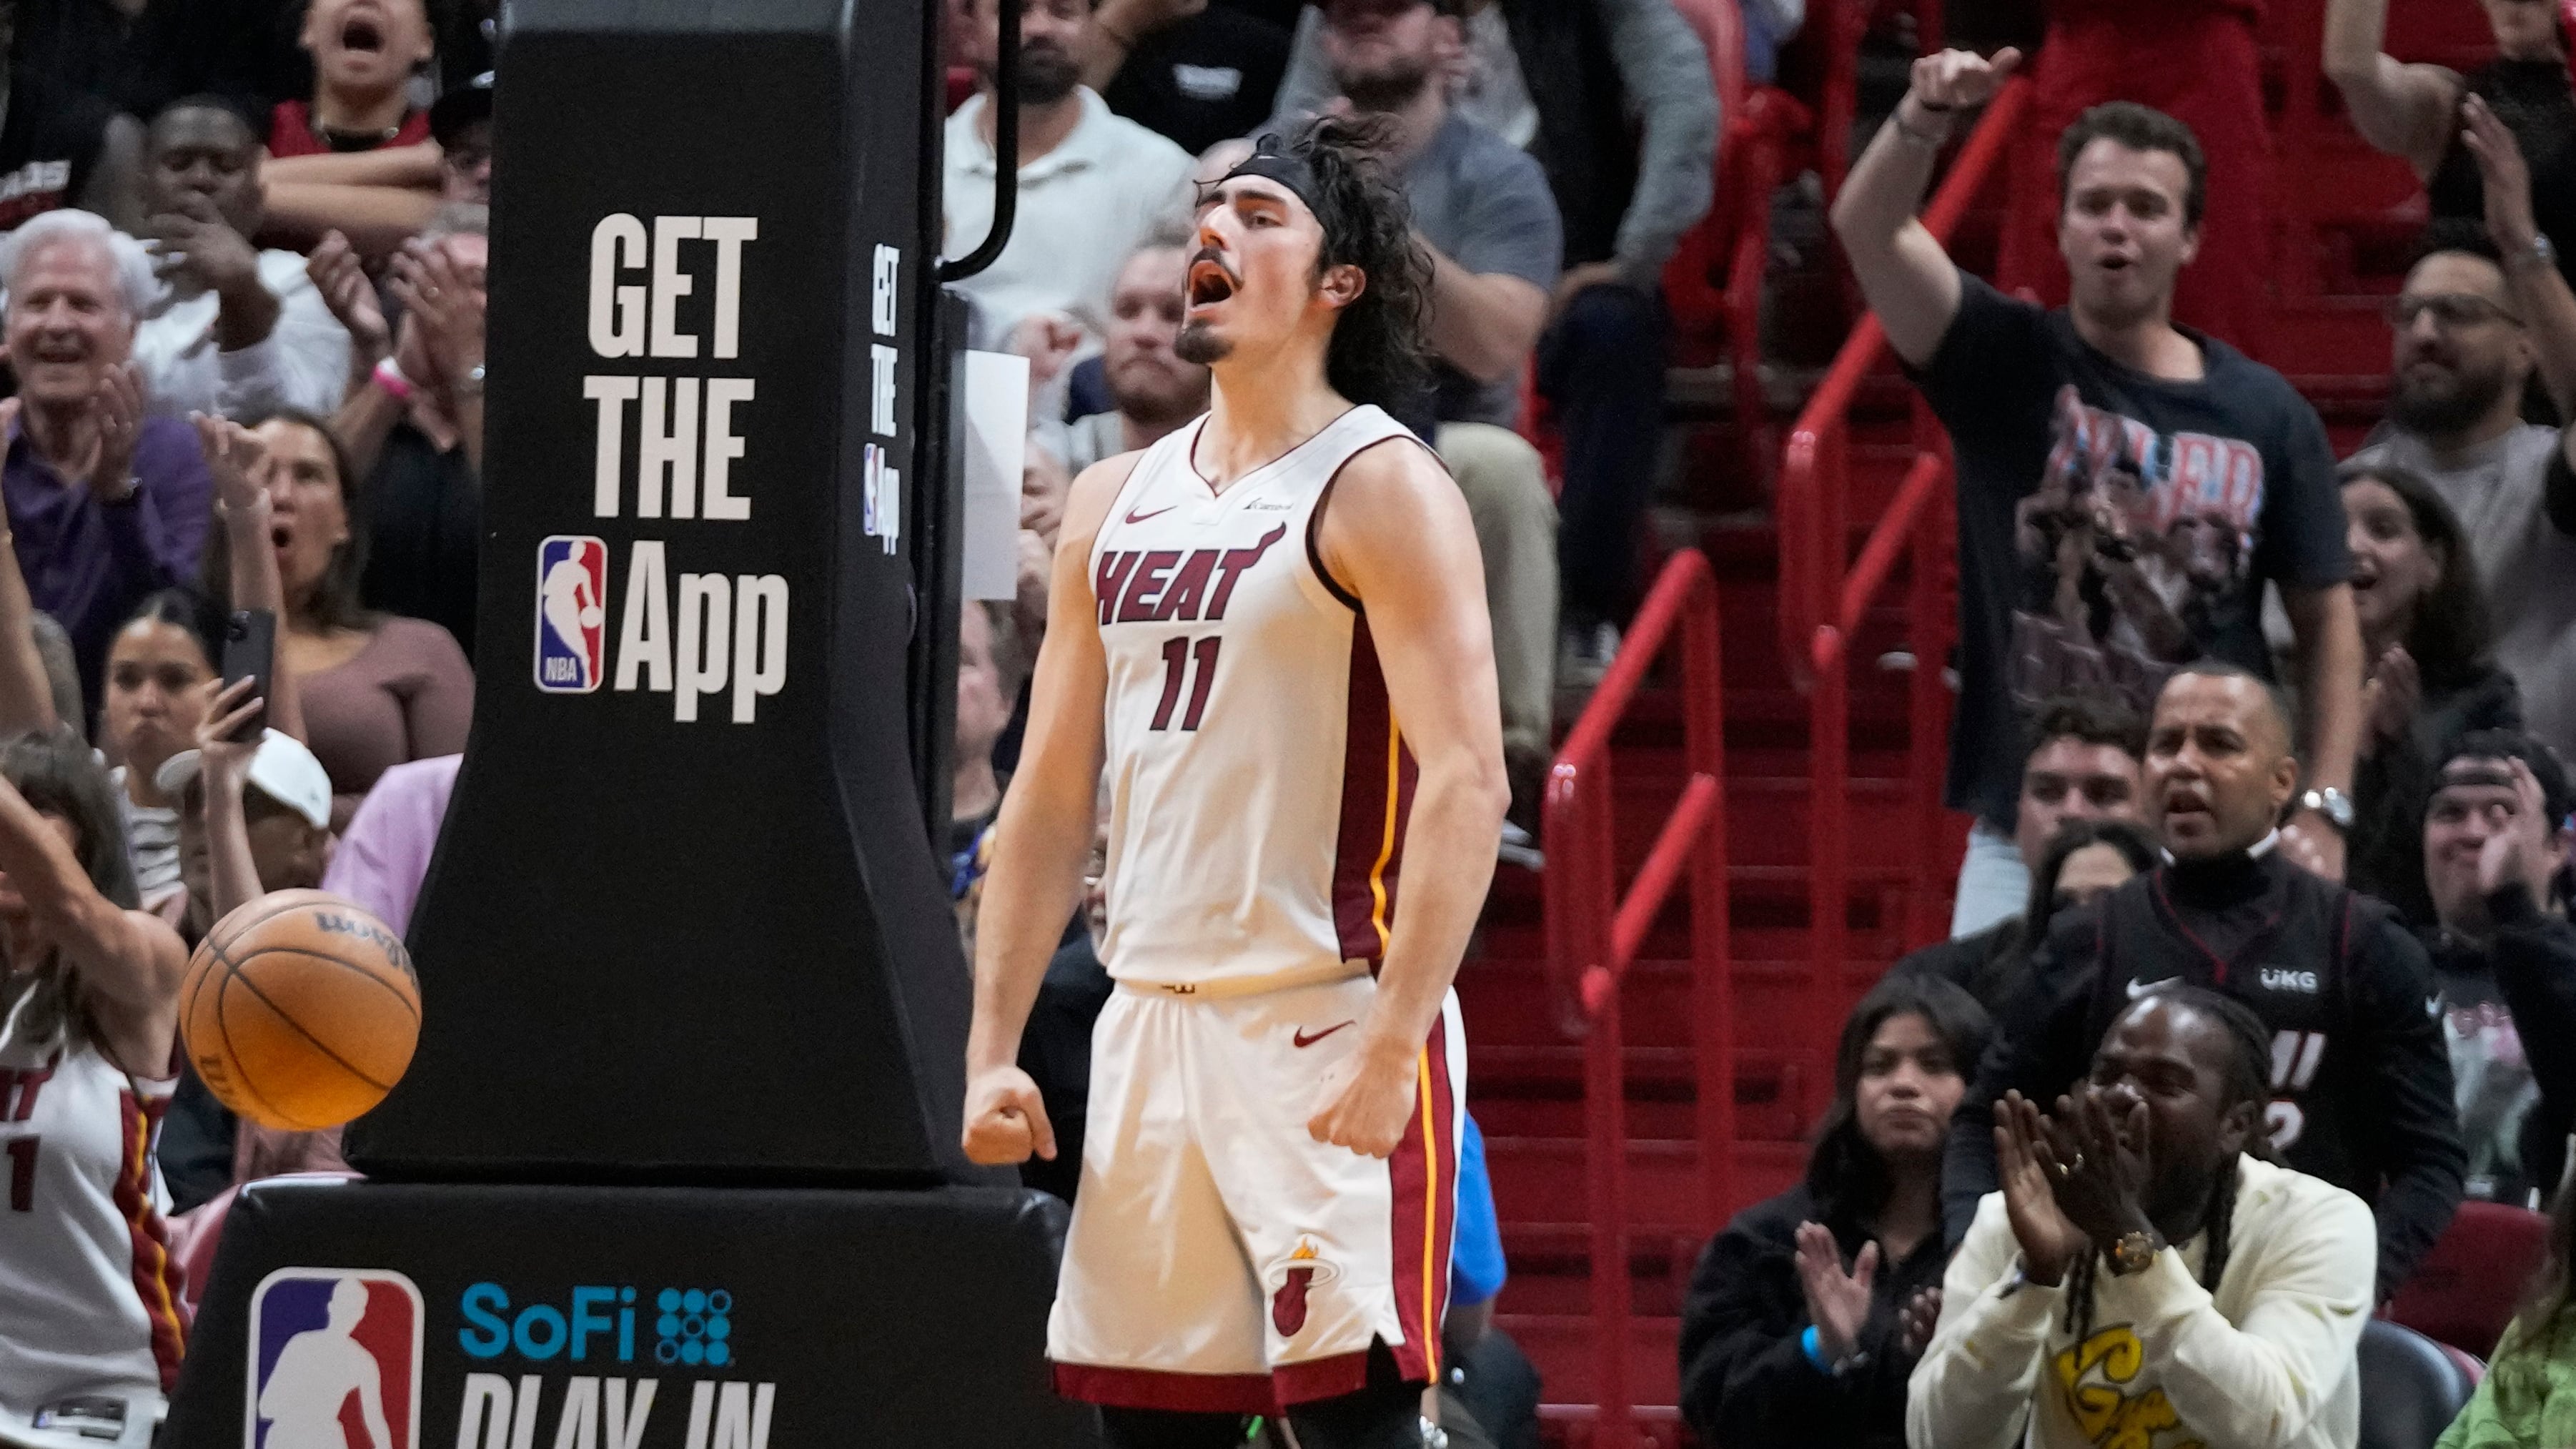 ¡Viene Jaime Jáquez! NBA anuncia juego oficial Miami Heat vs Washington Wizards en México